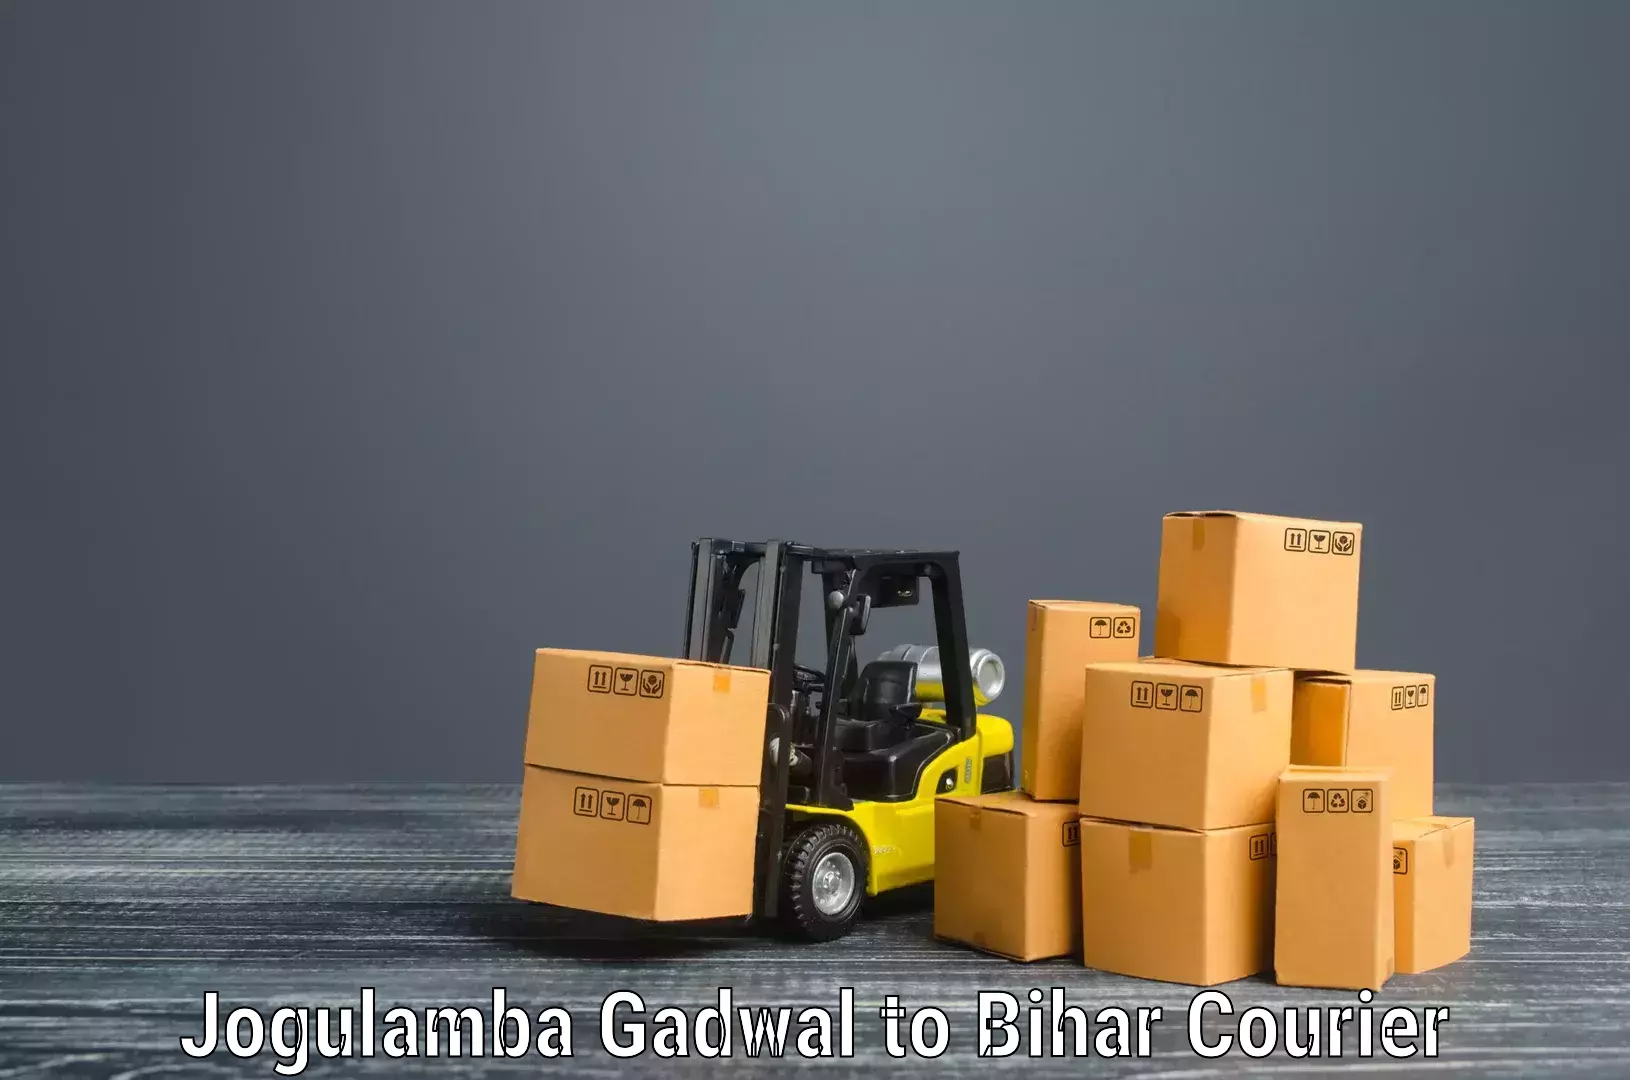 Furniture moving service in Jogulamba Gadwal to Sonbarsa